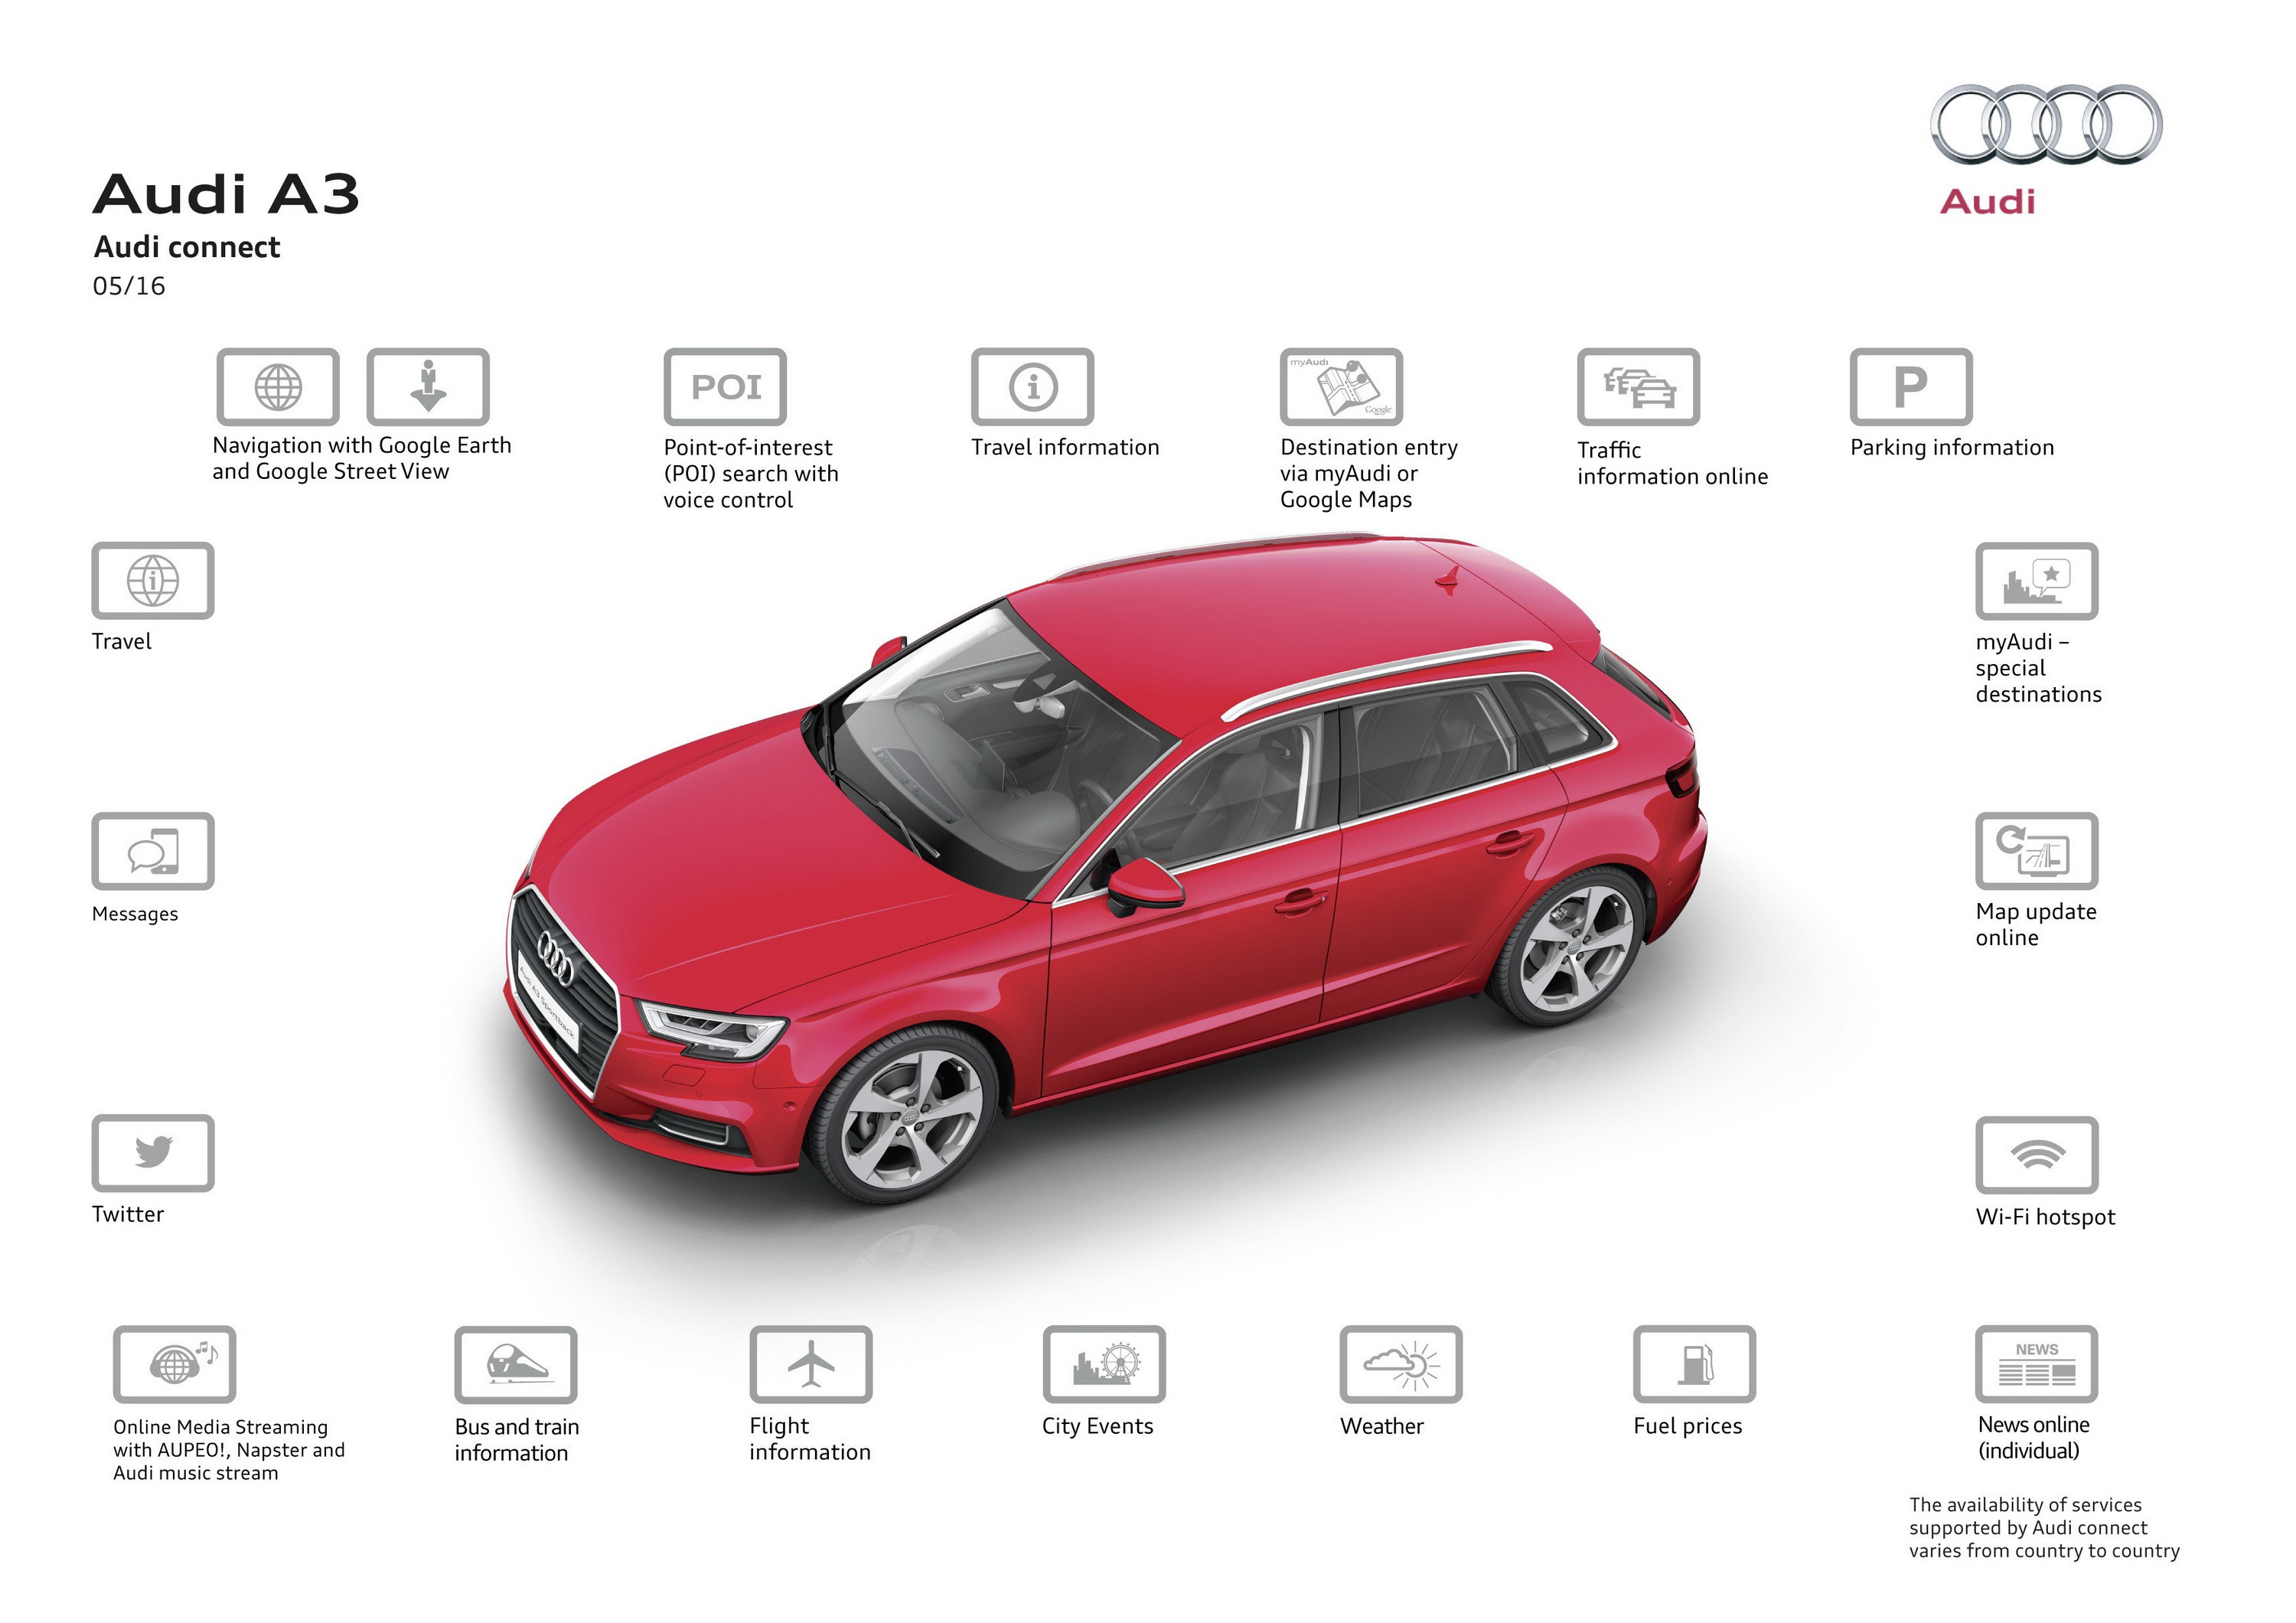 Audi presenta los coches siempre conectados gracias a la eSIM de fábrica